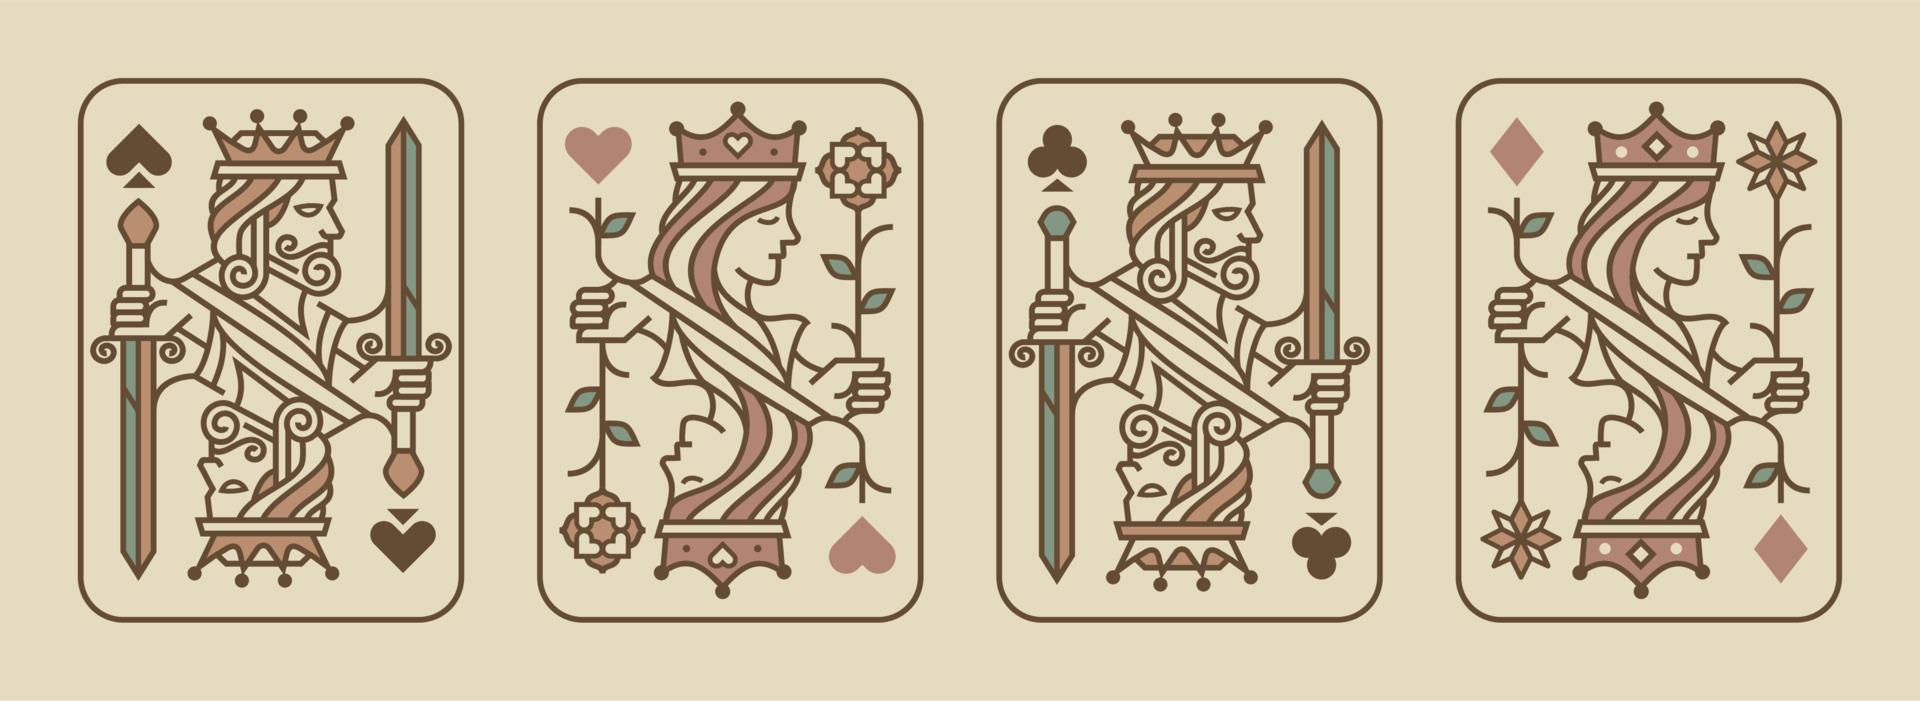 juego de rey y reina ilustración vectorial de naipes juego de corazones, espada, diamante y club, colección de diseño de tarjetas reales vector